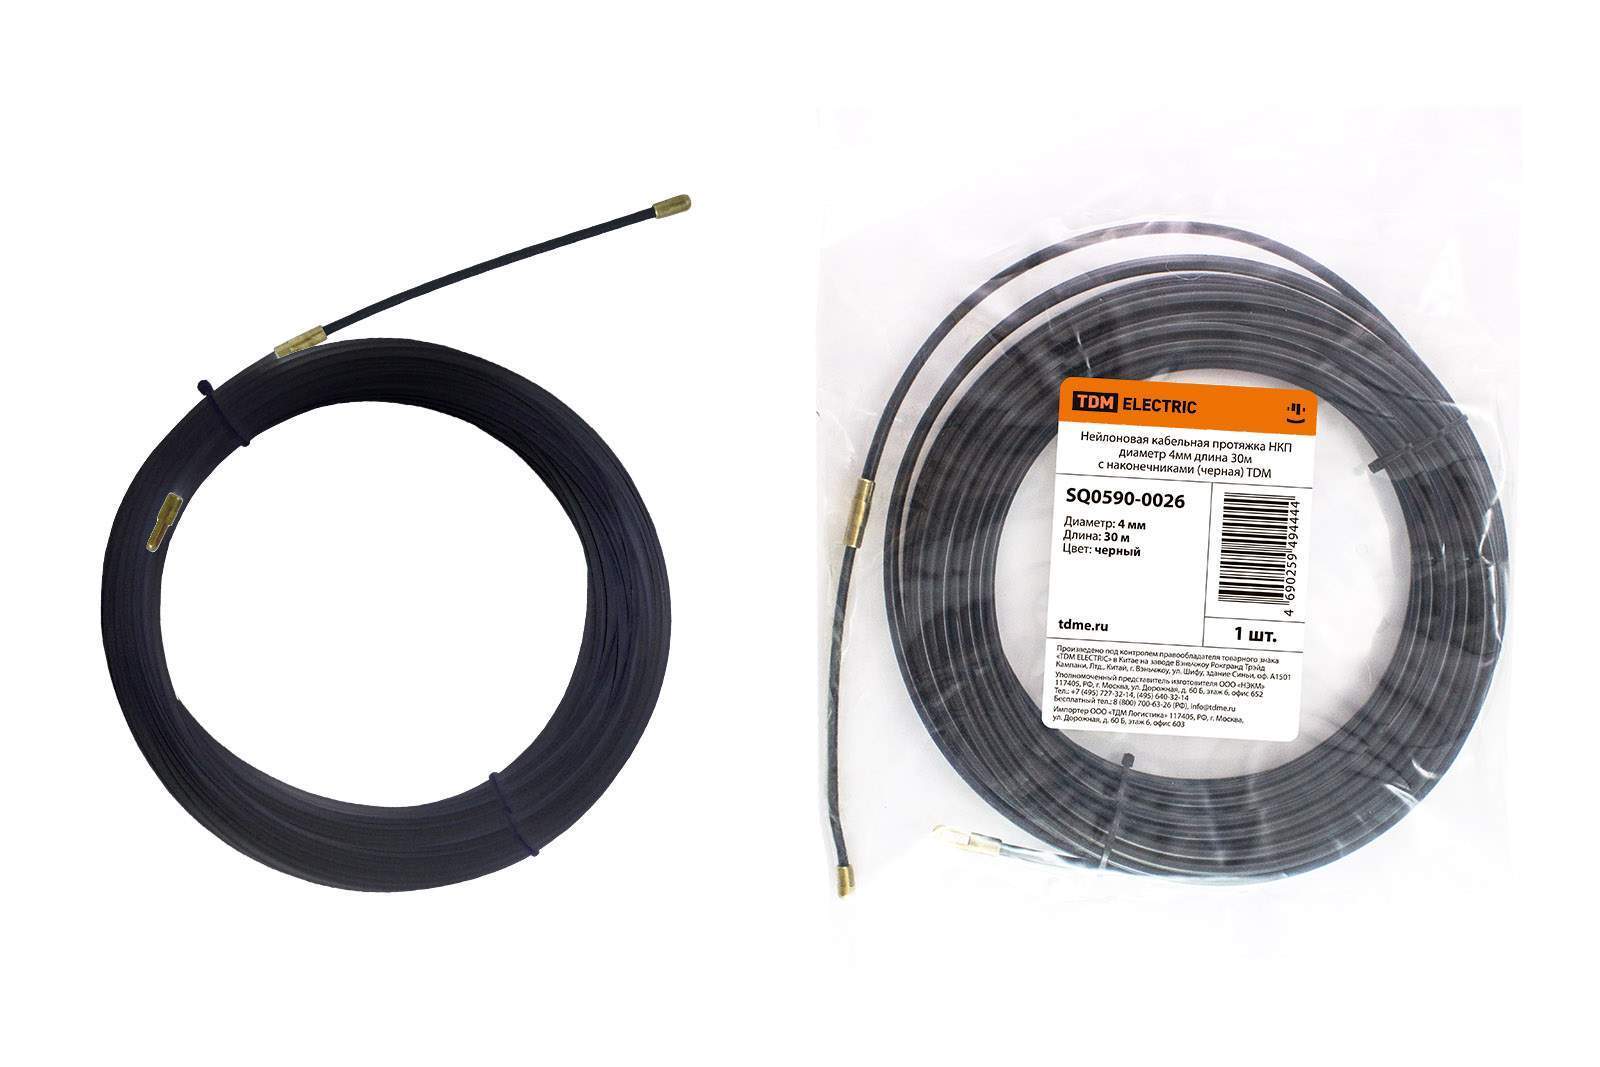 нейлоновая кабельная протяжка нкп диаметр 4мм длина 30м с наконечниками (черная) tdm от BTSprom.by